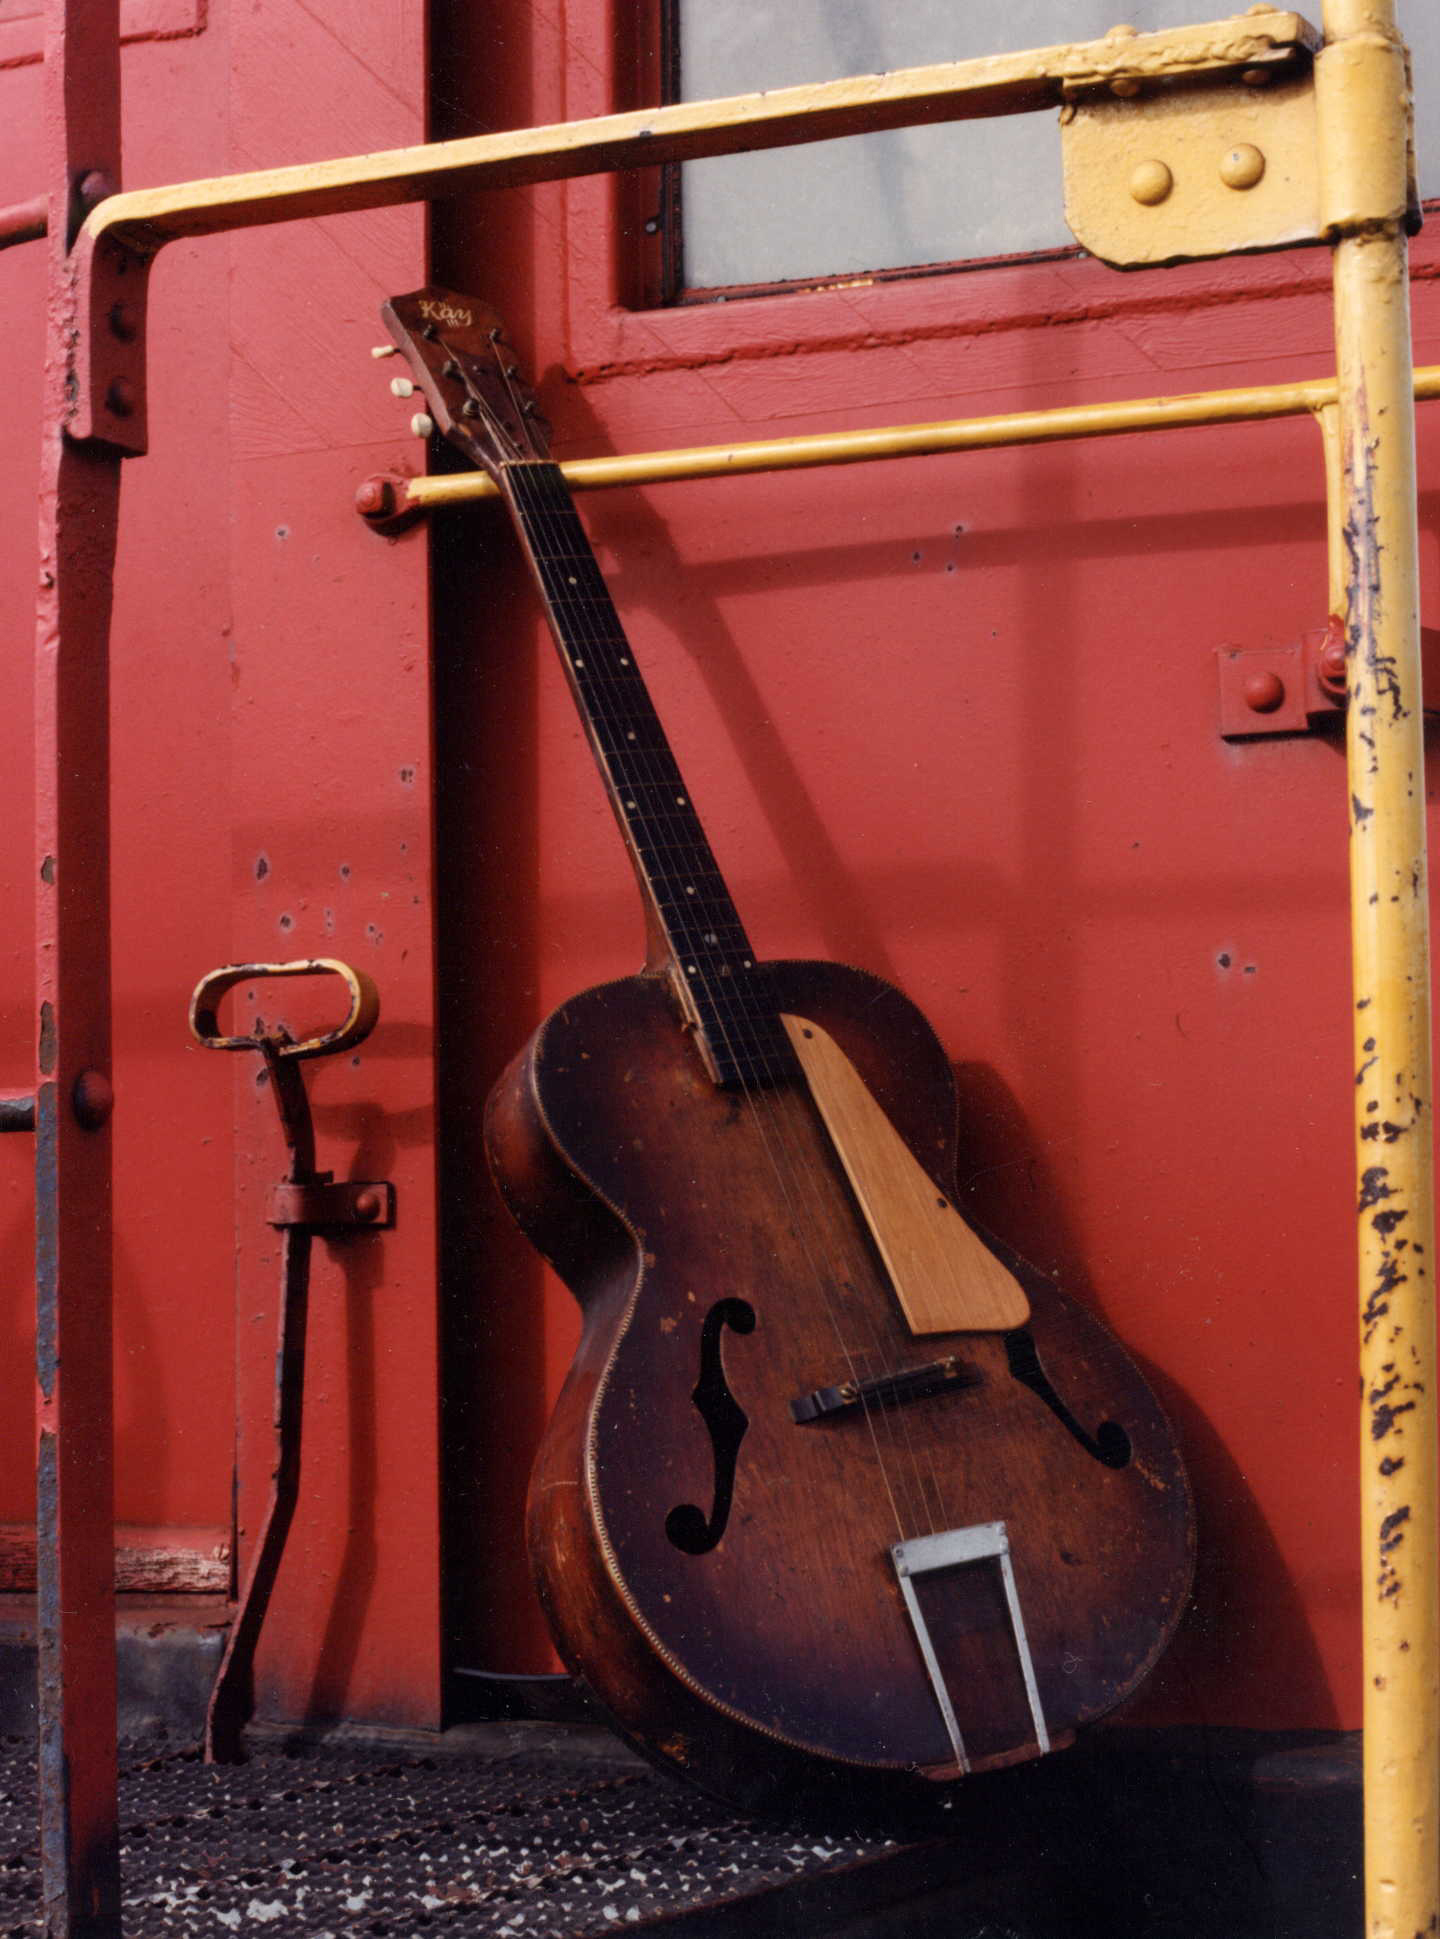 Conrad's Kay guitar, by W.S.McIntosh